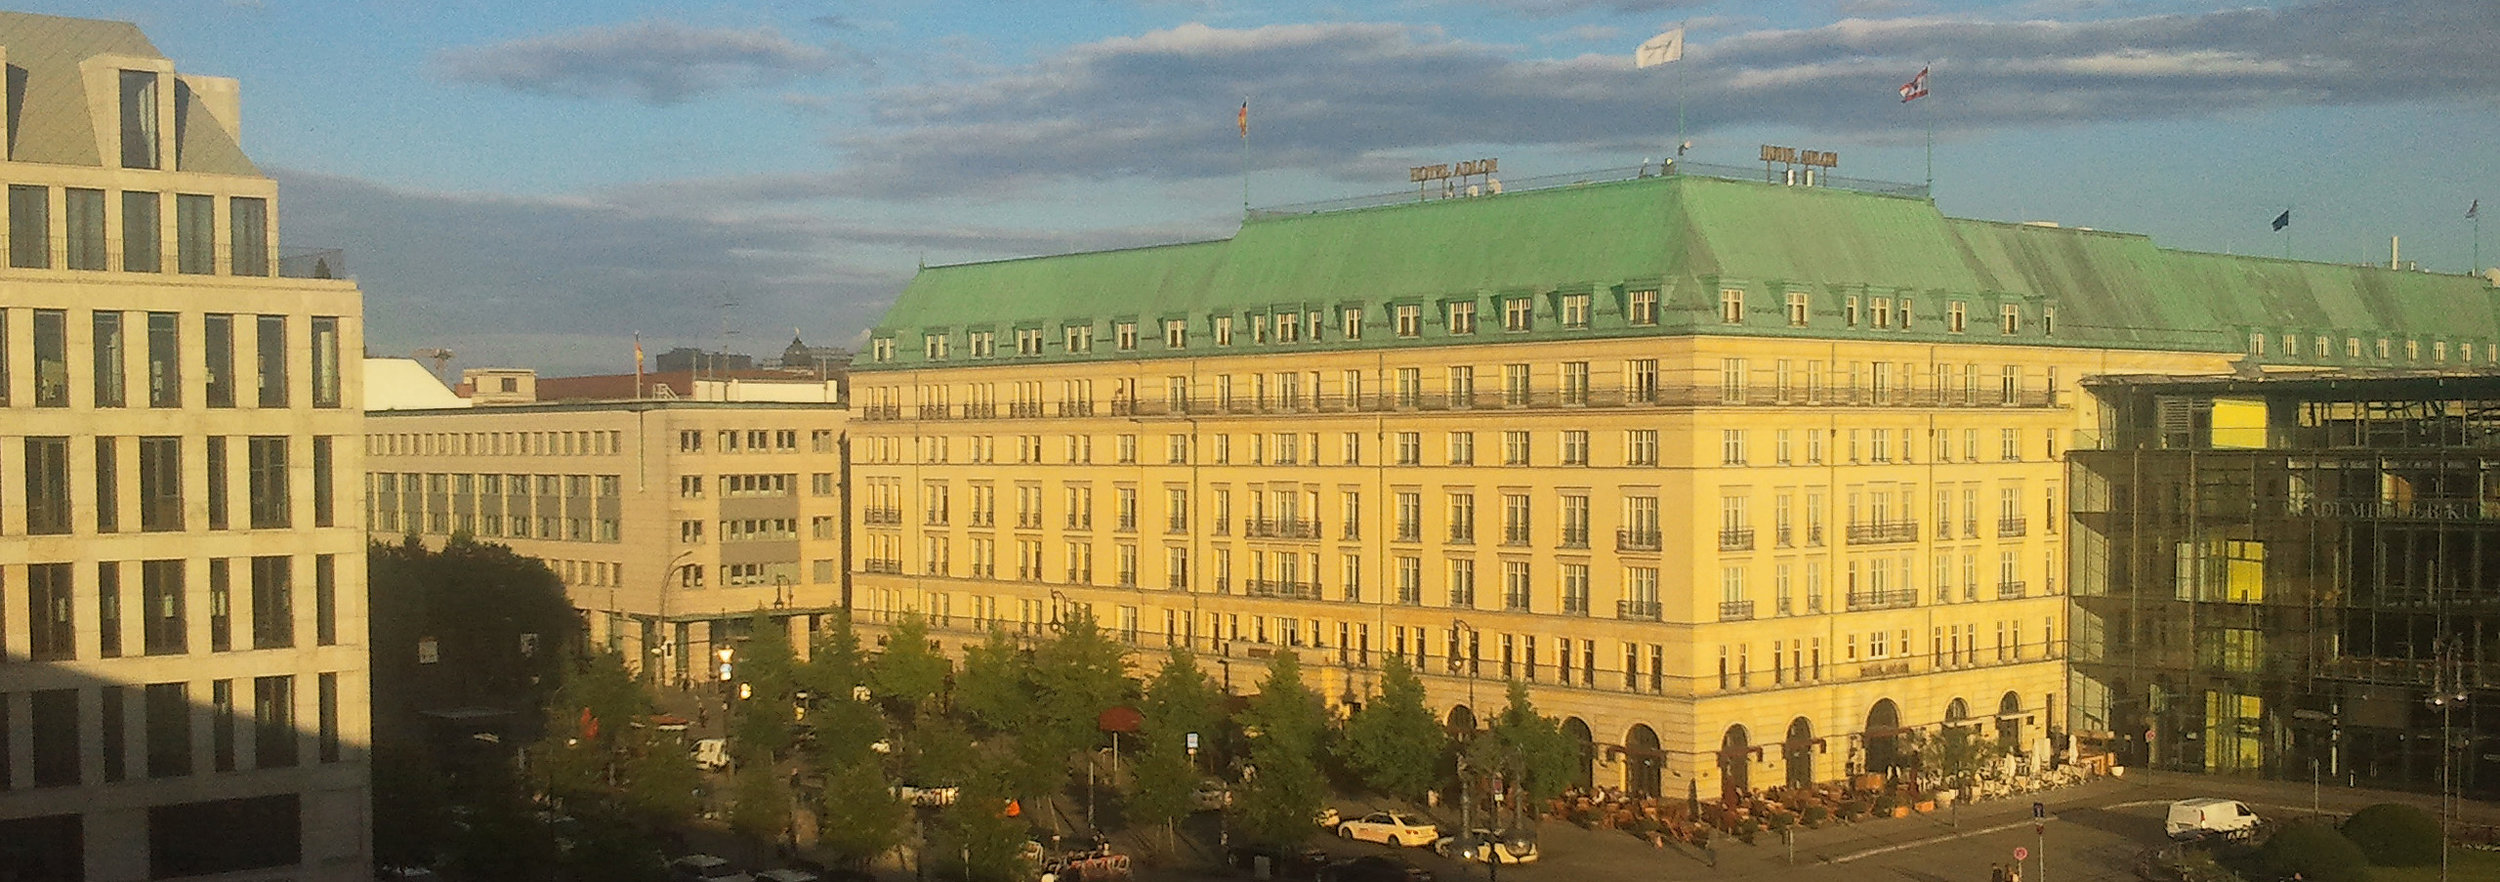 Hotel Adlon + UNTER DEN LINDEN_2014-07-02 20.07.22_OPT_Streifen 900p.jpg